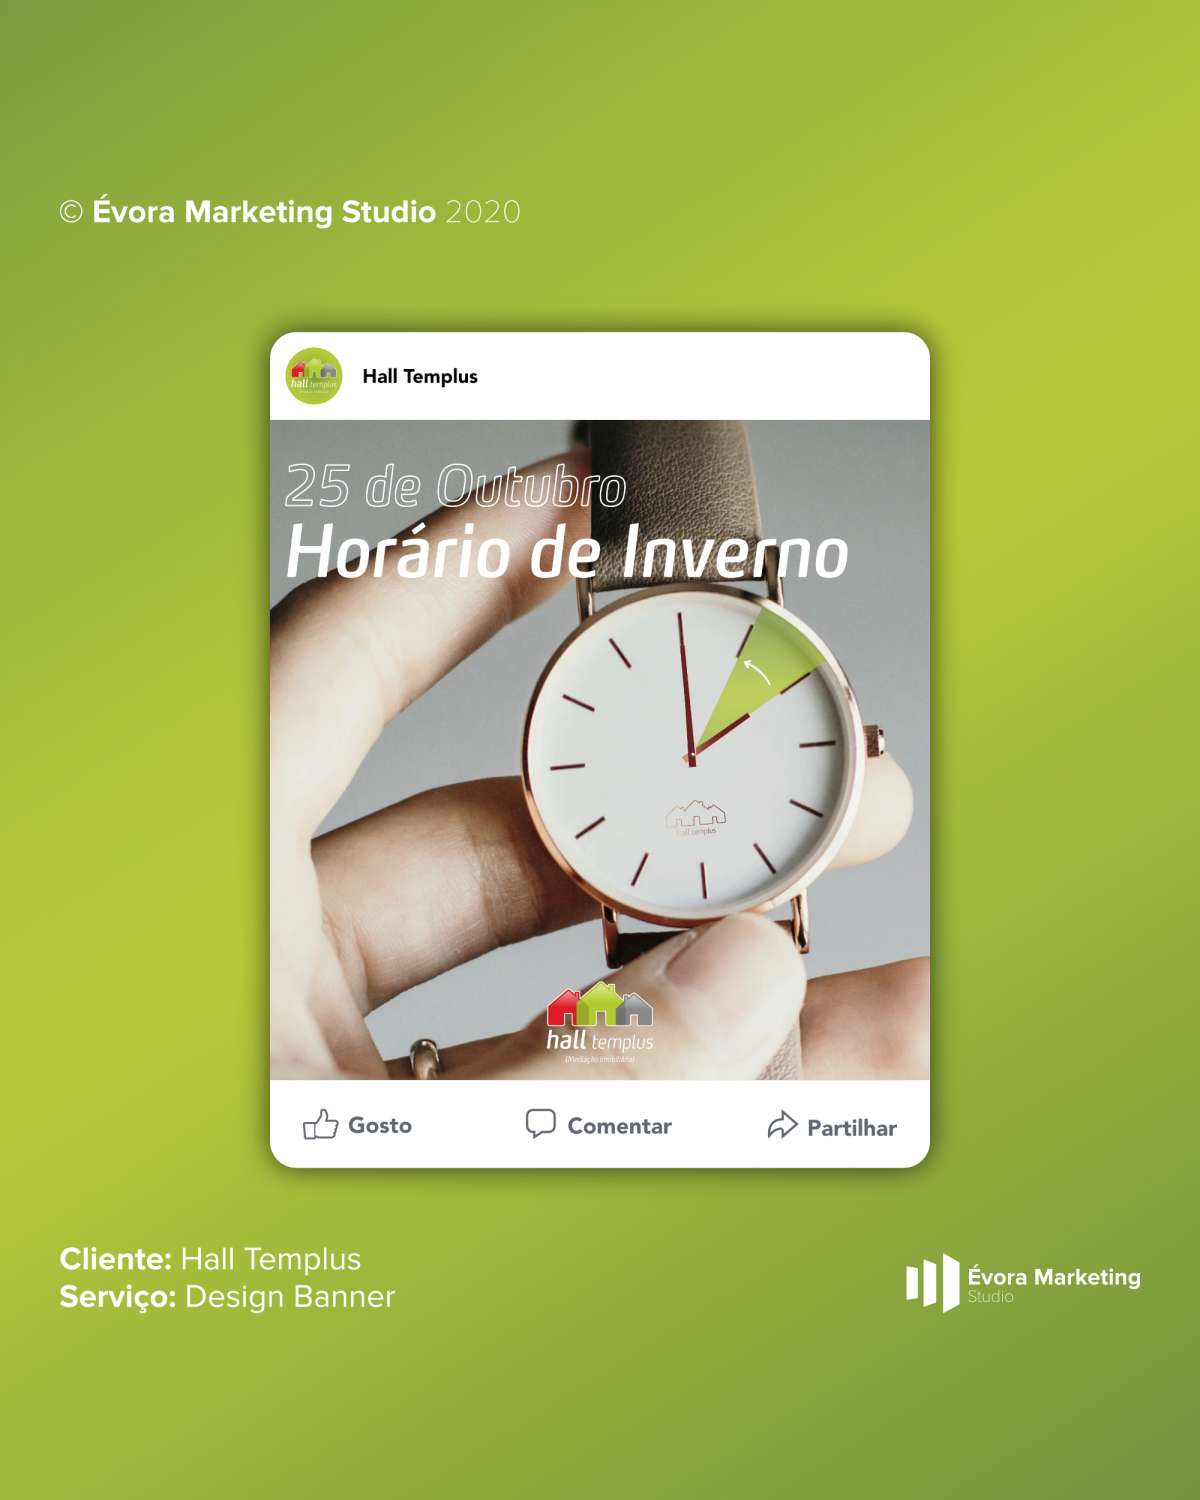 Évora Marketing Studio - Évora - Gestão de Redes Sociais